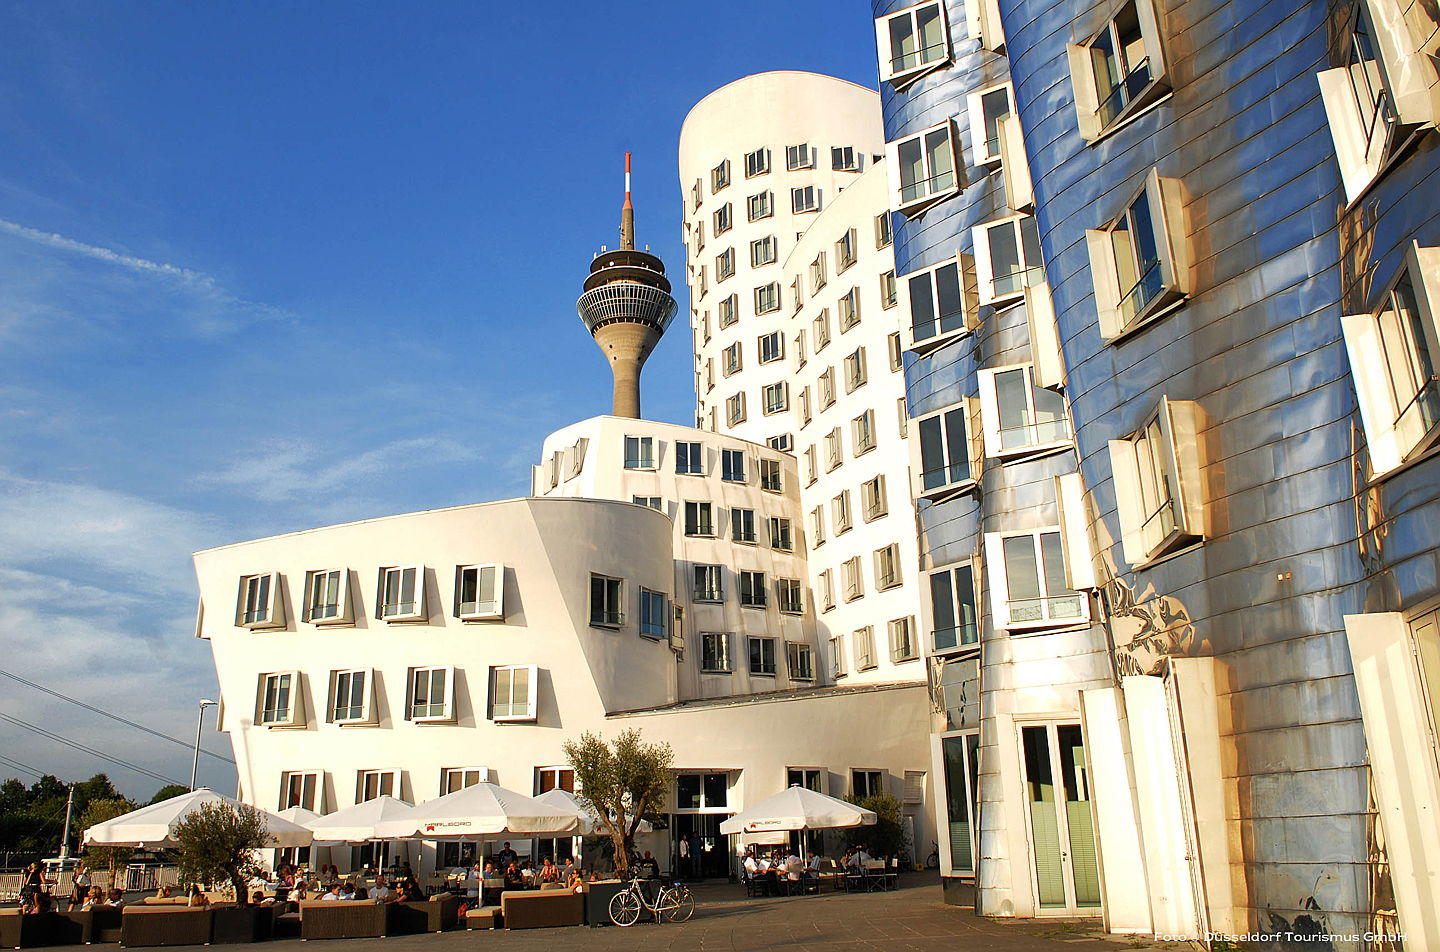  Düsseldorf
- Frank-Gehry-Häuser im Düsseldorfer Medienhafen